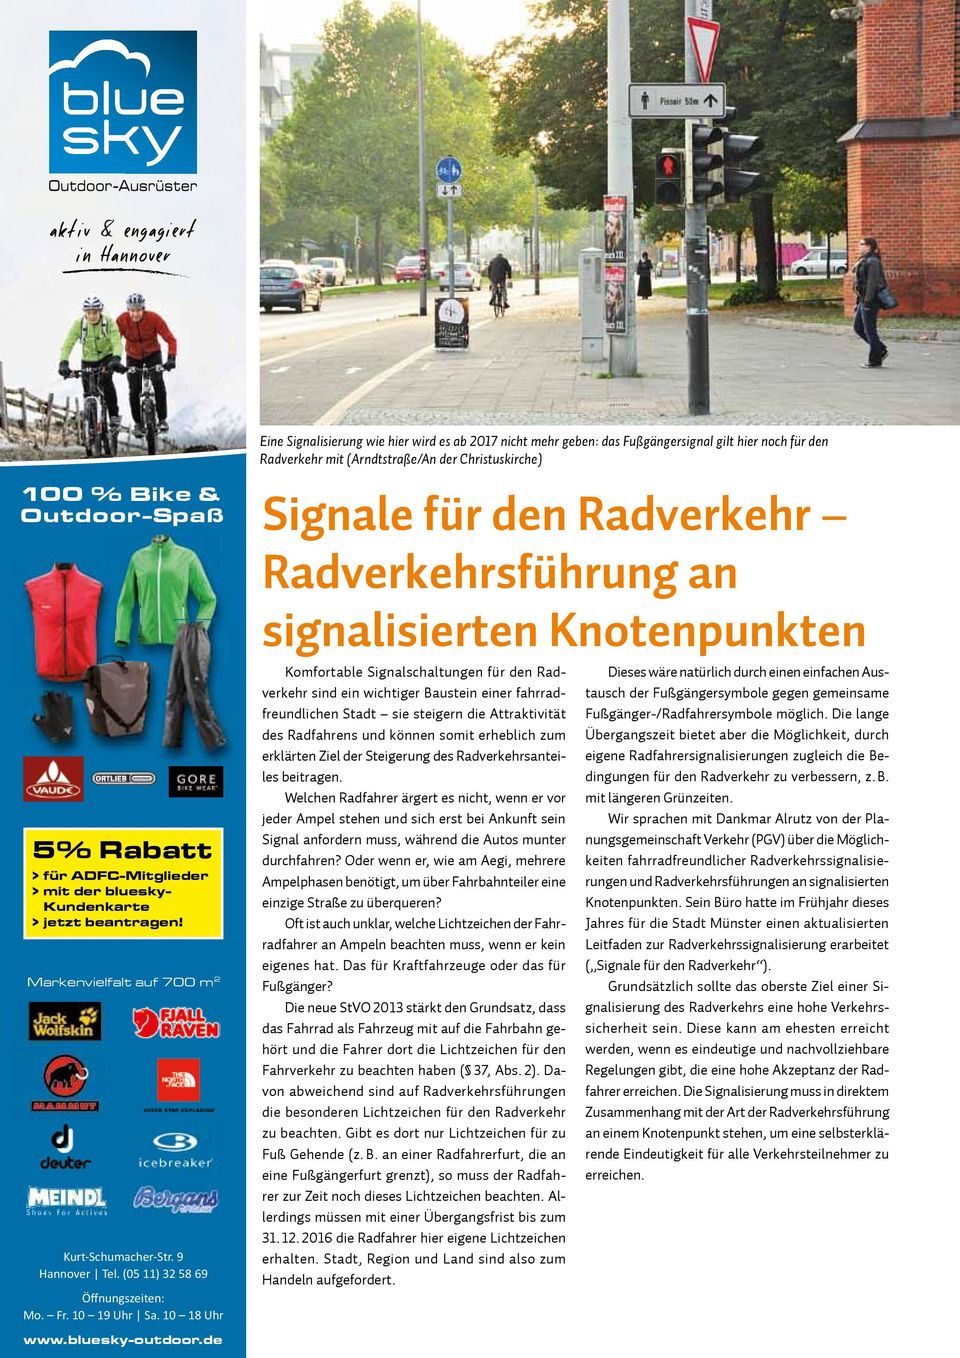 10 18 Uhr Signale für den Radverkehr Radverkehrsführung an signalisierten Knotenpunkten Komfortable Signalschaltungen für den Radverkehr sind ein wichtiger Baustein einer fahrradfreundlichen Stadt